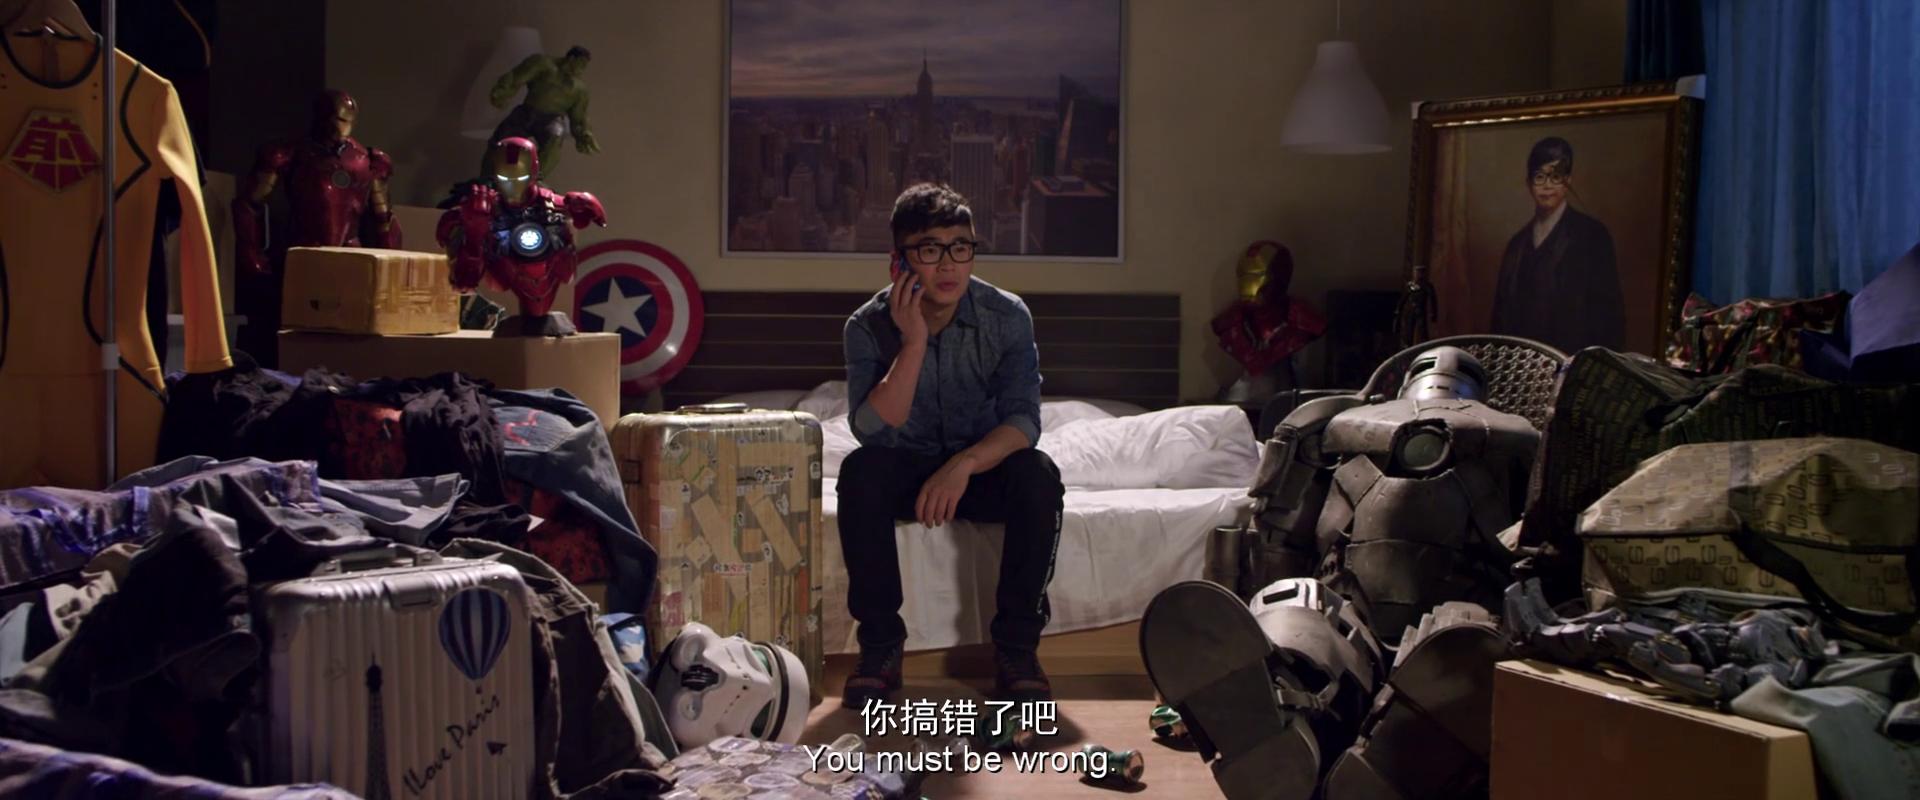 Кадр из фильма Человек-блин / Jian Bing Man (2015)